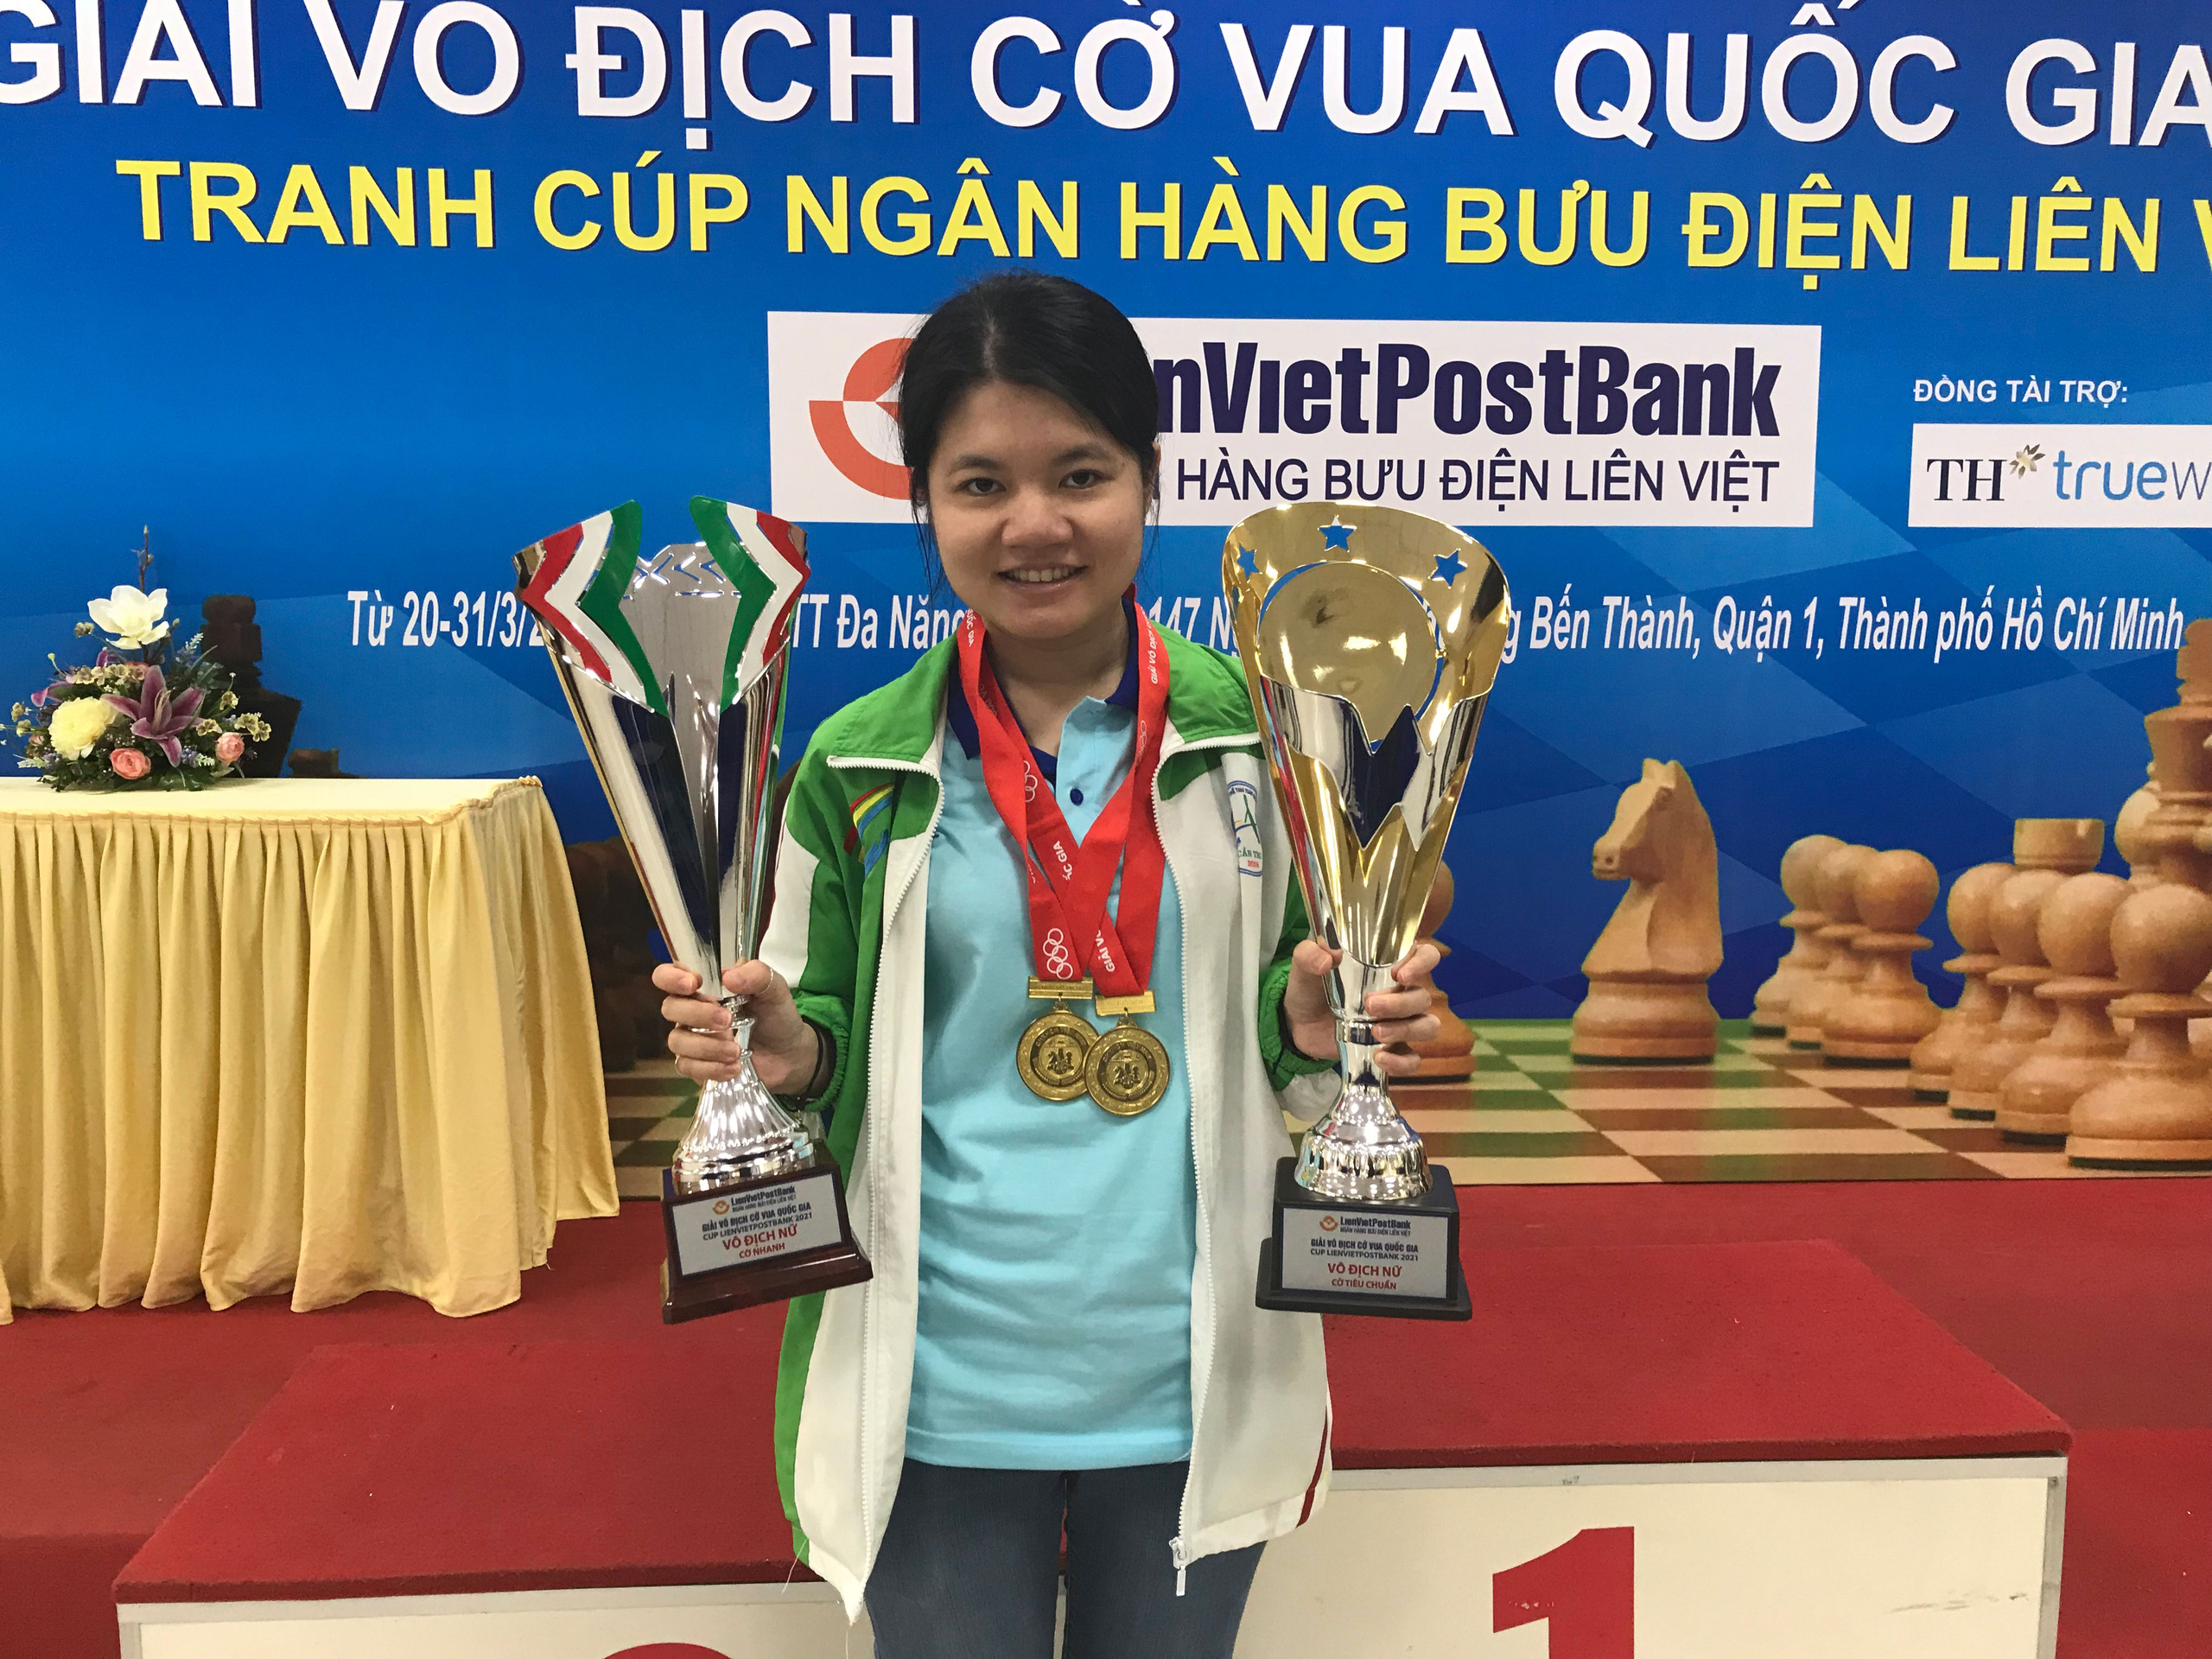 Cờ vua Việt Nam: Với sự phát triển của cờ vua ở Việt Nam trong những năm gần đây, nó đã trở thành môn thể thao được người Việt yêu thích và chú trọng hơn. Các giải đấu cờ vua quốc tế diễn ra tại Việt Nam thu hút đông đảo người chơi và khán giả. Hãy đến và cùng xem những pha đánh cờ kinh điển tại các giải đấu lớn.